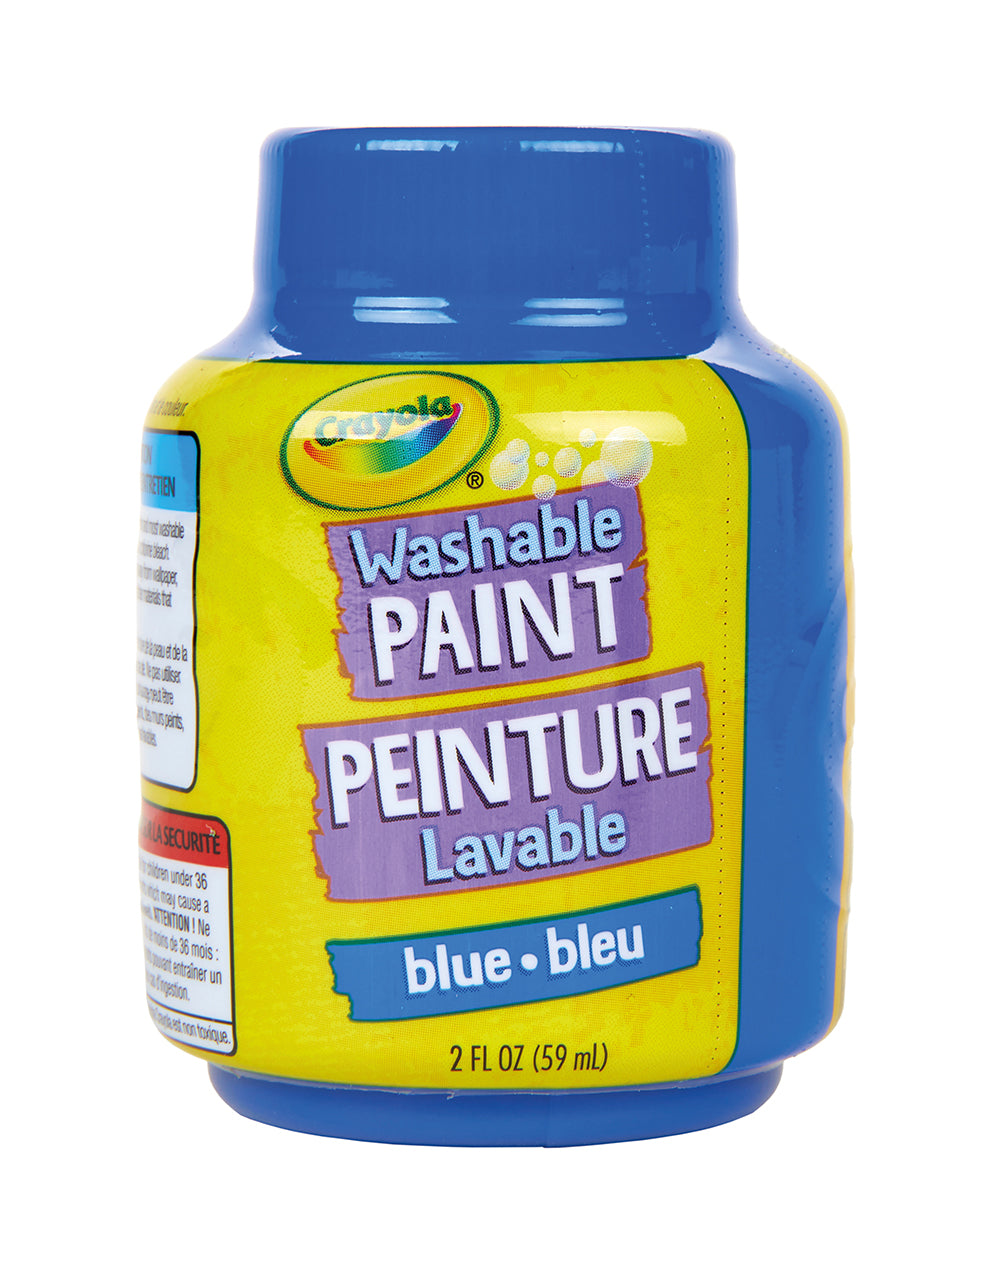 Peinture lavable - Bleu